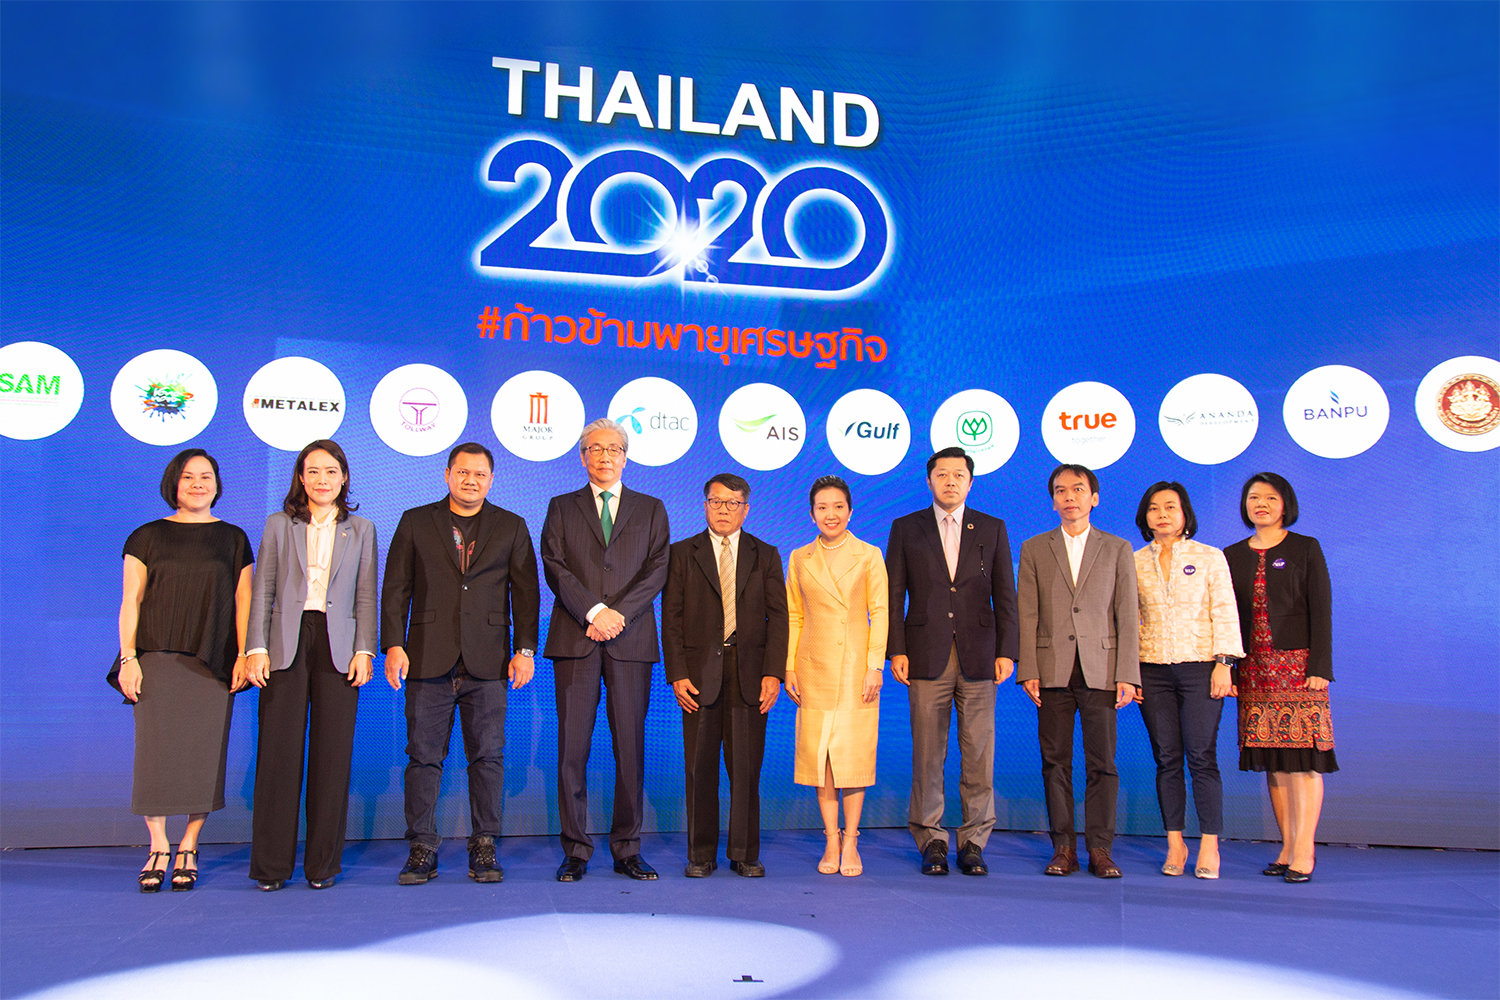 seminar-prachachat-thailand-2020-banner.jpg